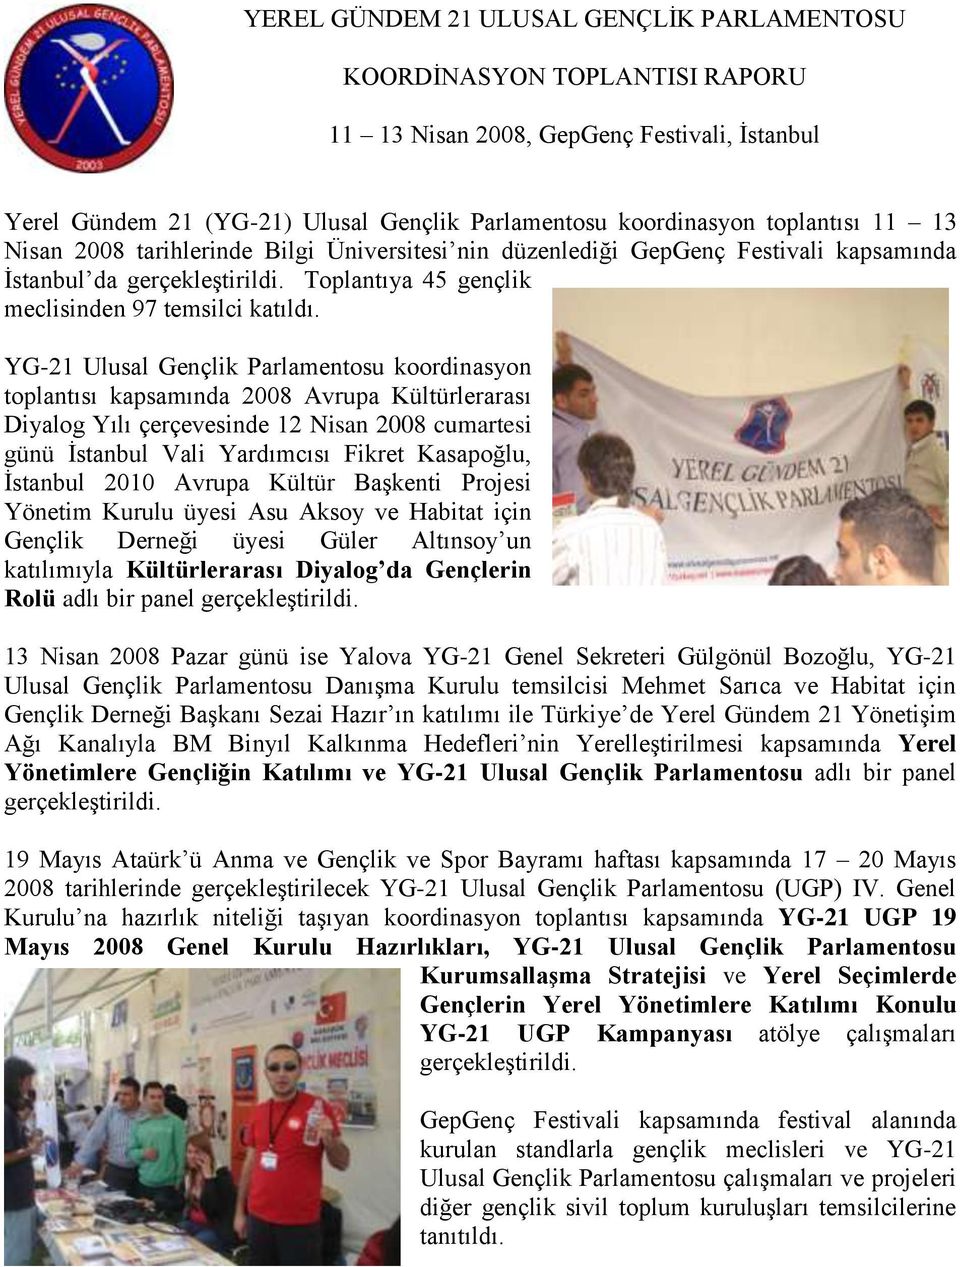 YG-21 Ulusal Gençlik Parlamentosu koordinasyon toplantısı kapsamında 2008 Avrupa Kültürlerarası Diyalog Yılı çerçevesinde 12 Nisan 2008 cumartesi günü İstanbul Vali Yardımcısı Fikret Kasapoğlu,